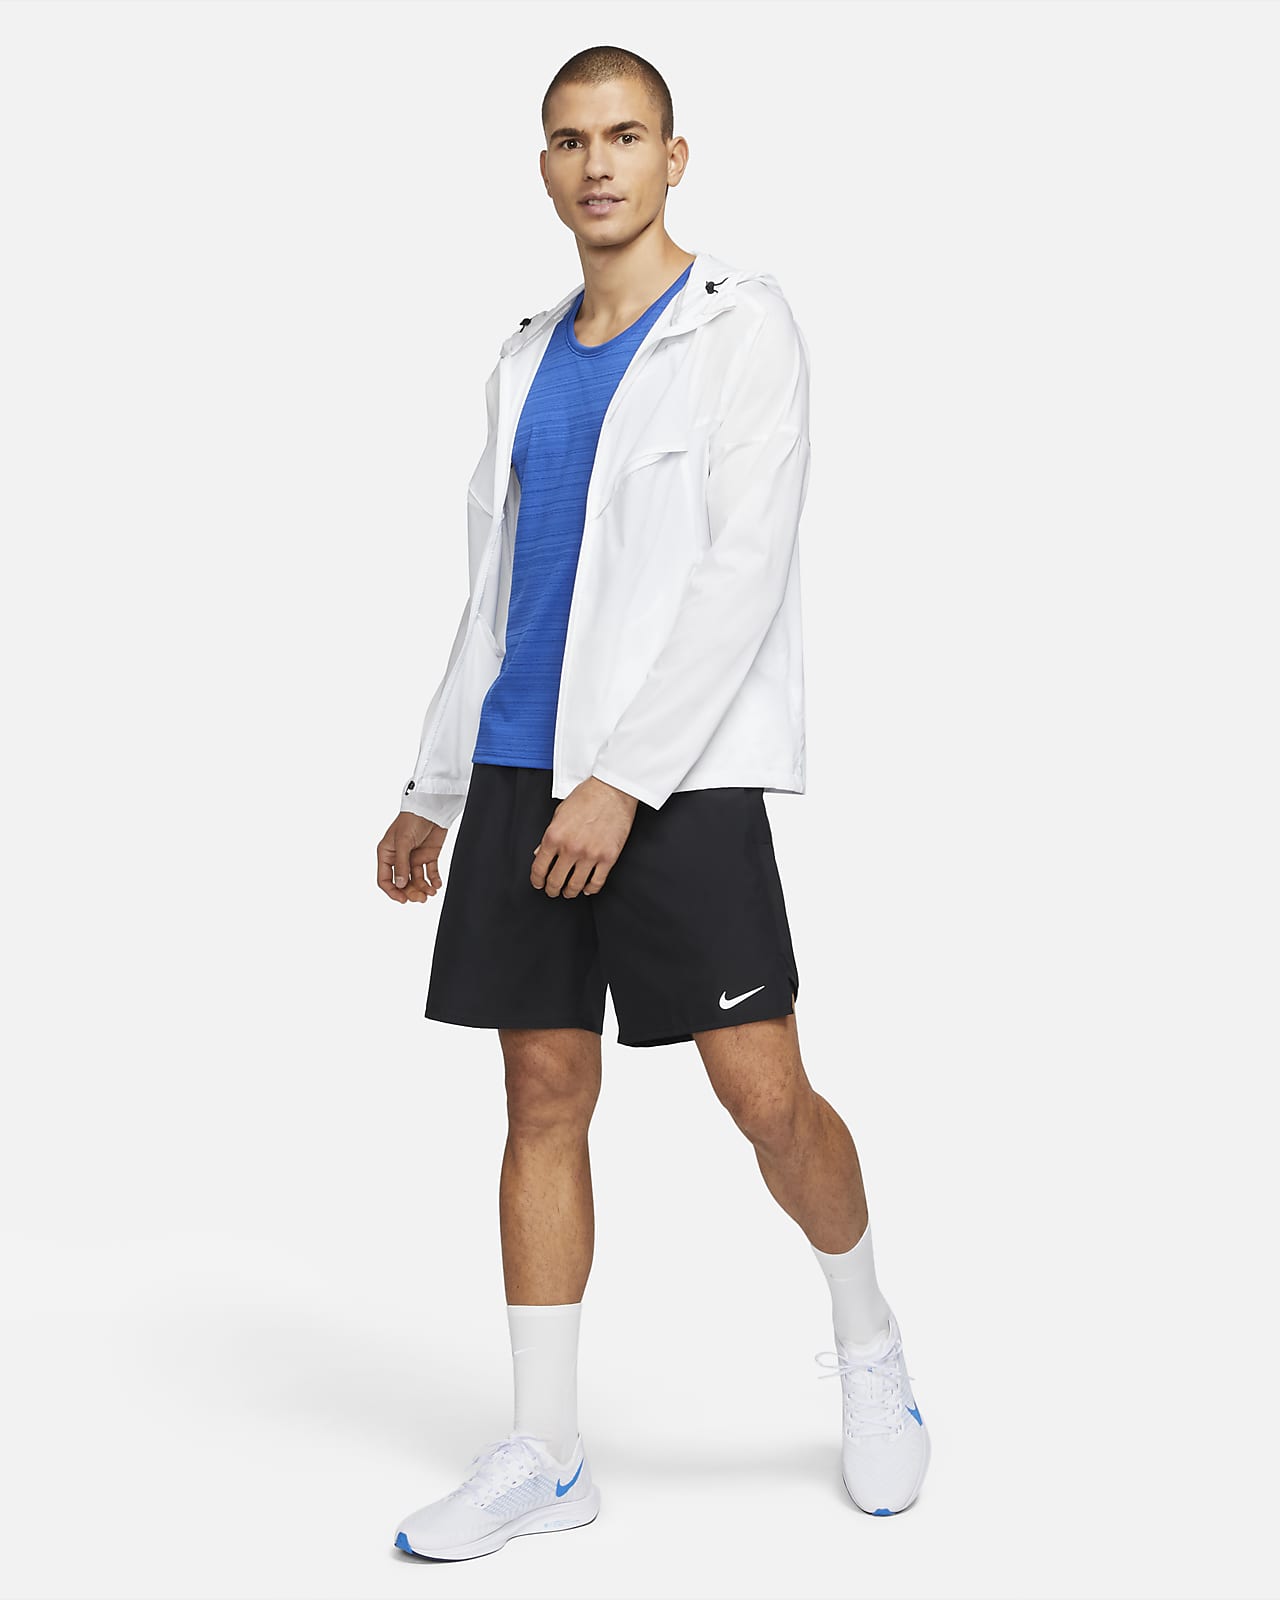 Nike Windrunner A.I.R. Men's Running Jacket